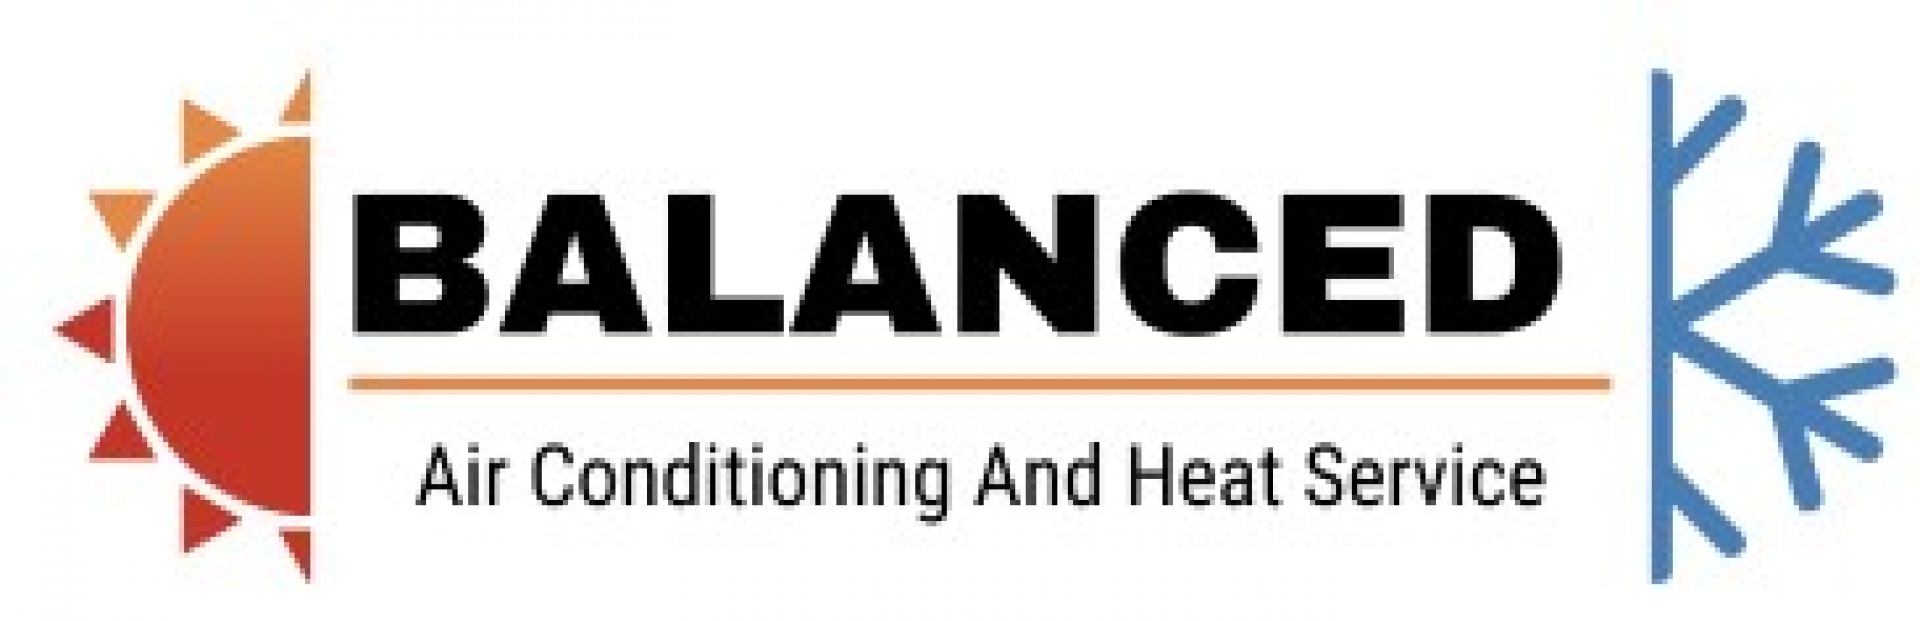 Balanced A/C and Heat Service company logo